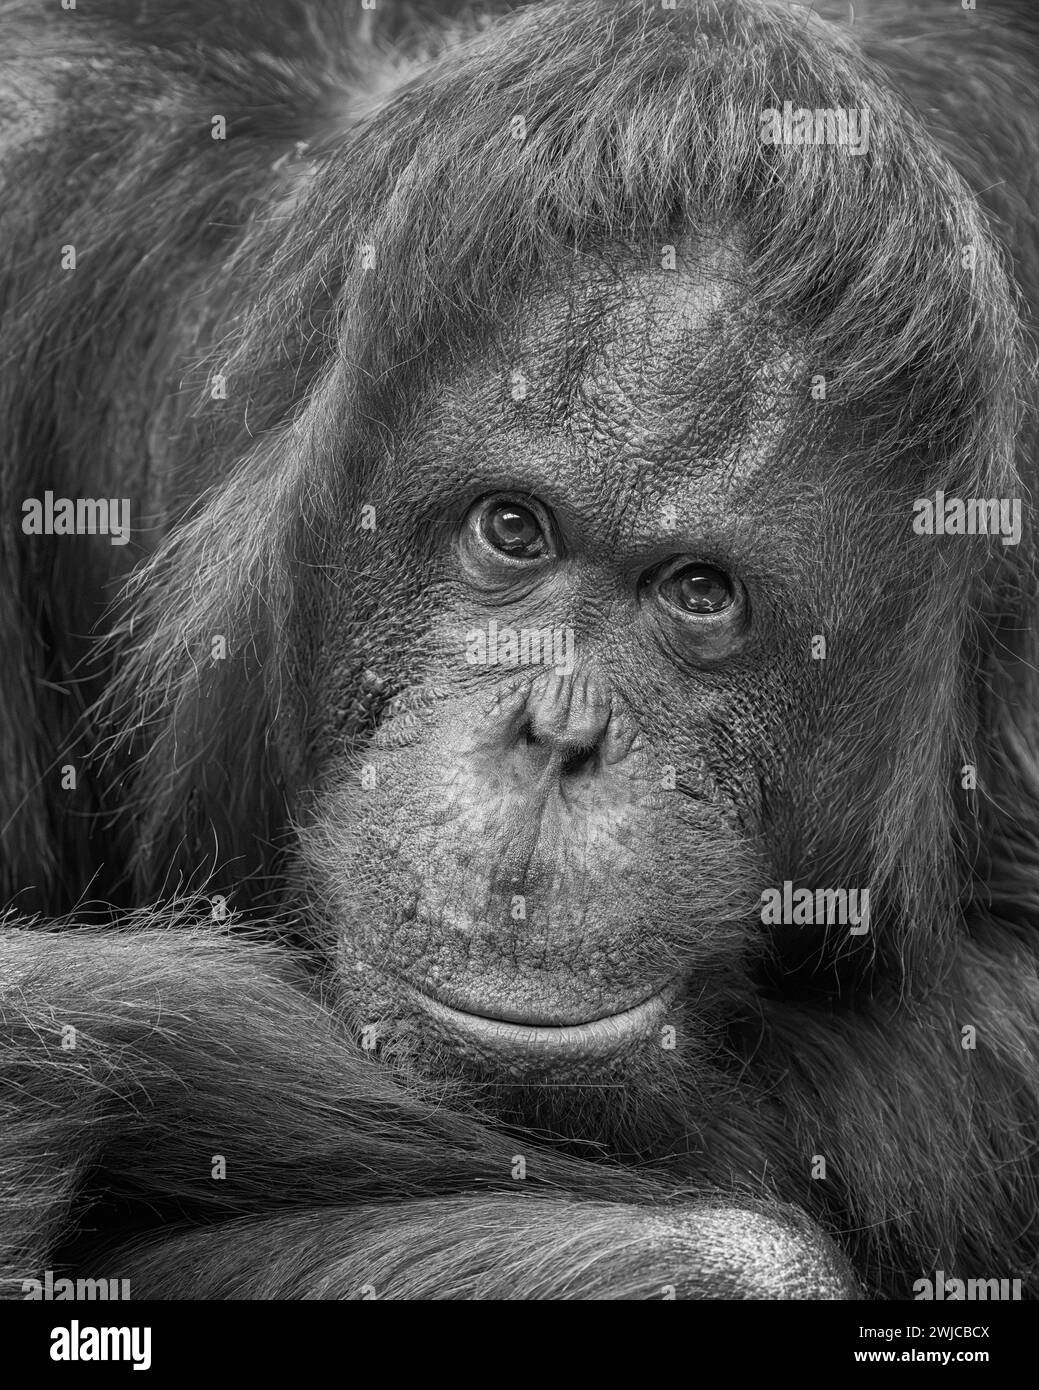 Adult female Bornean orangutan (Pongo pygmaeus) expressive extreme close up headshot Stock Photo